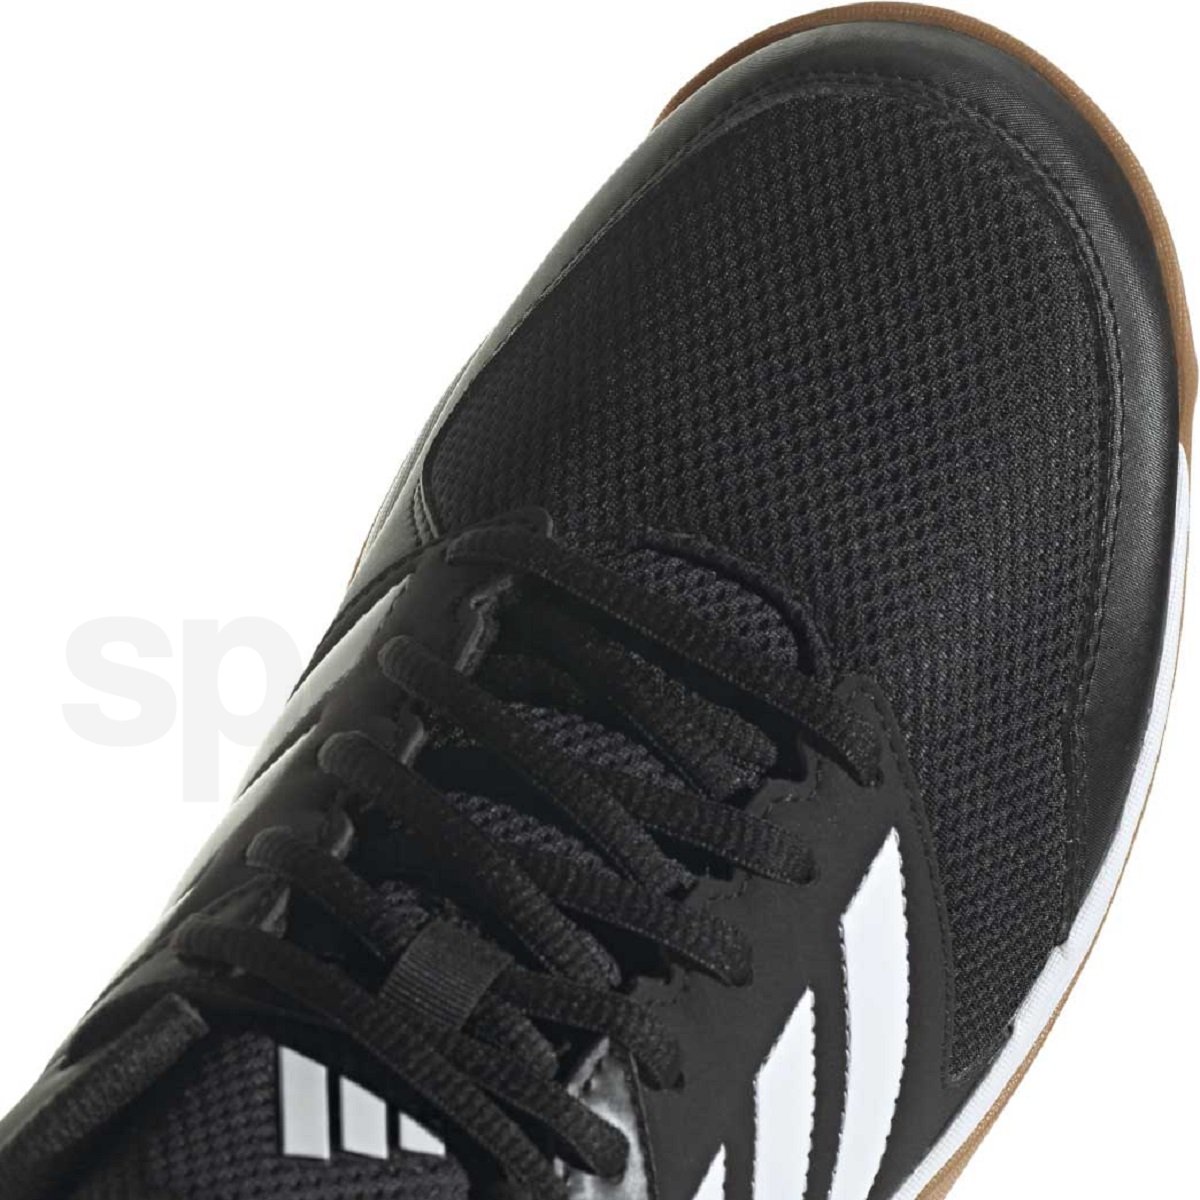 Obuv Adidas Speedcourt M - černá/bílá